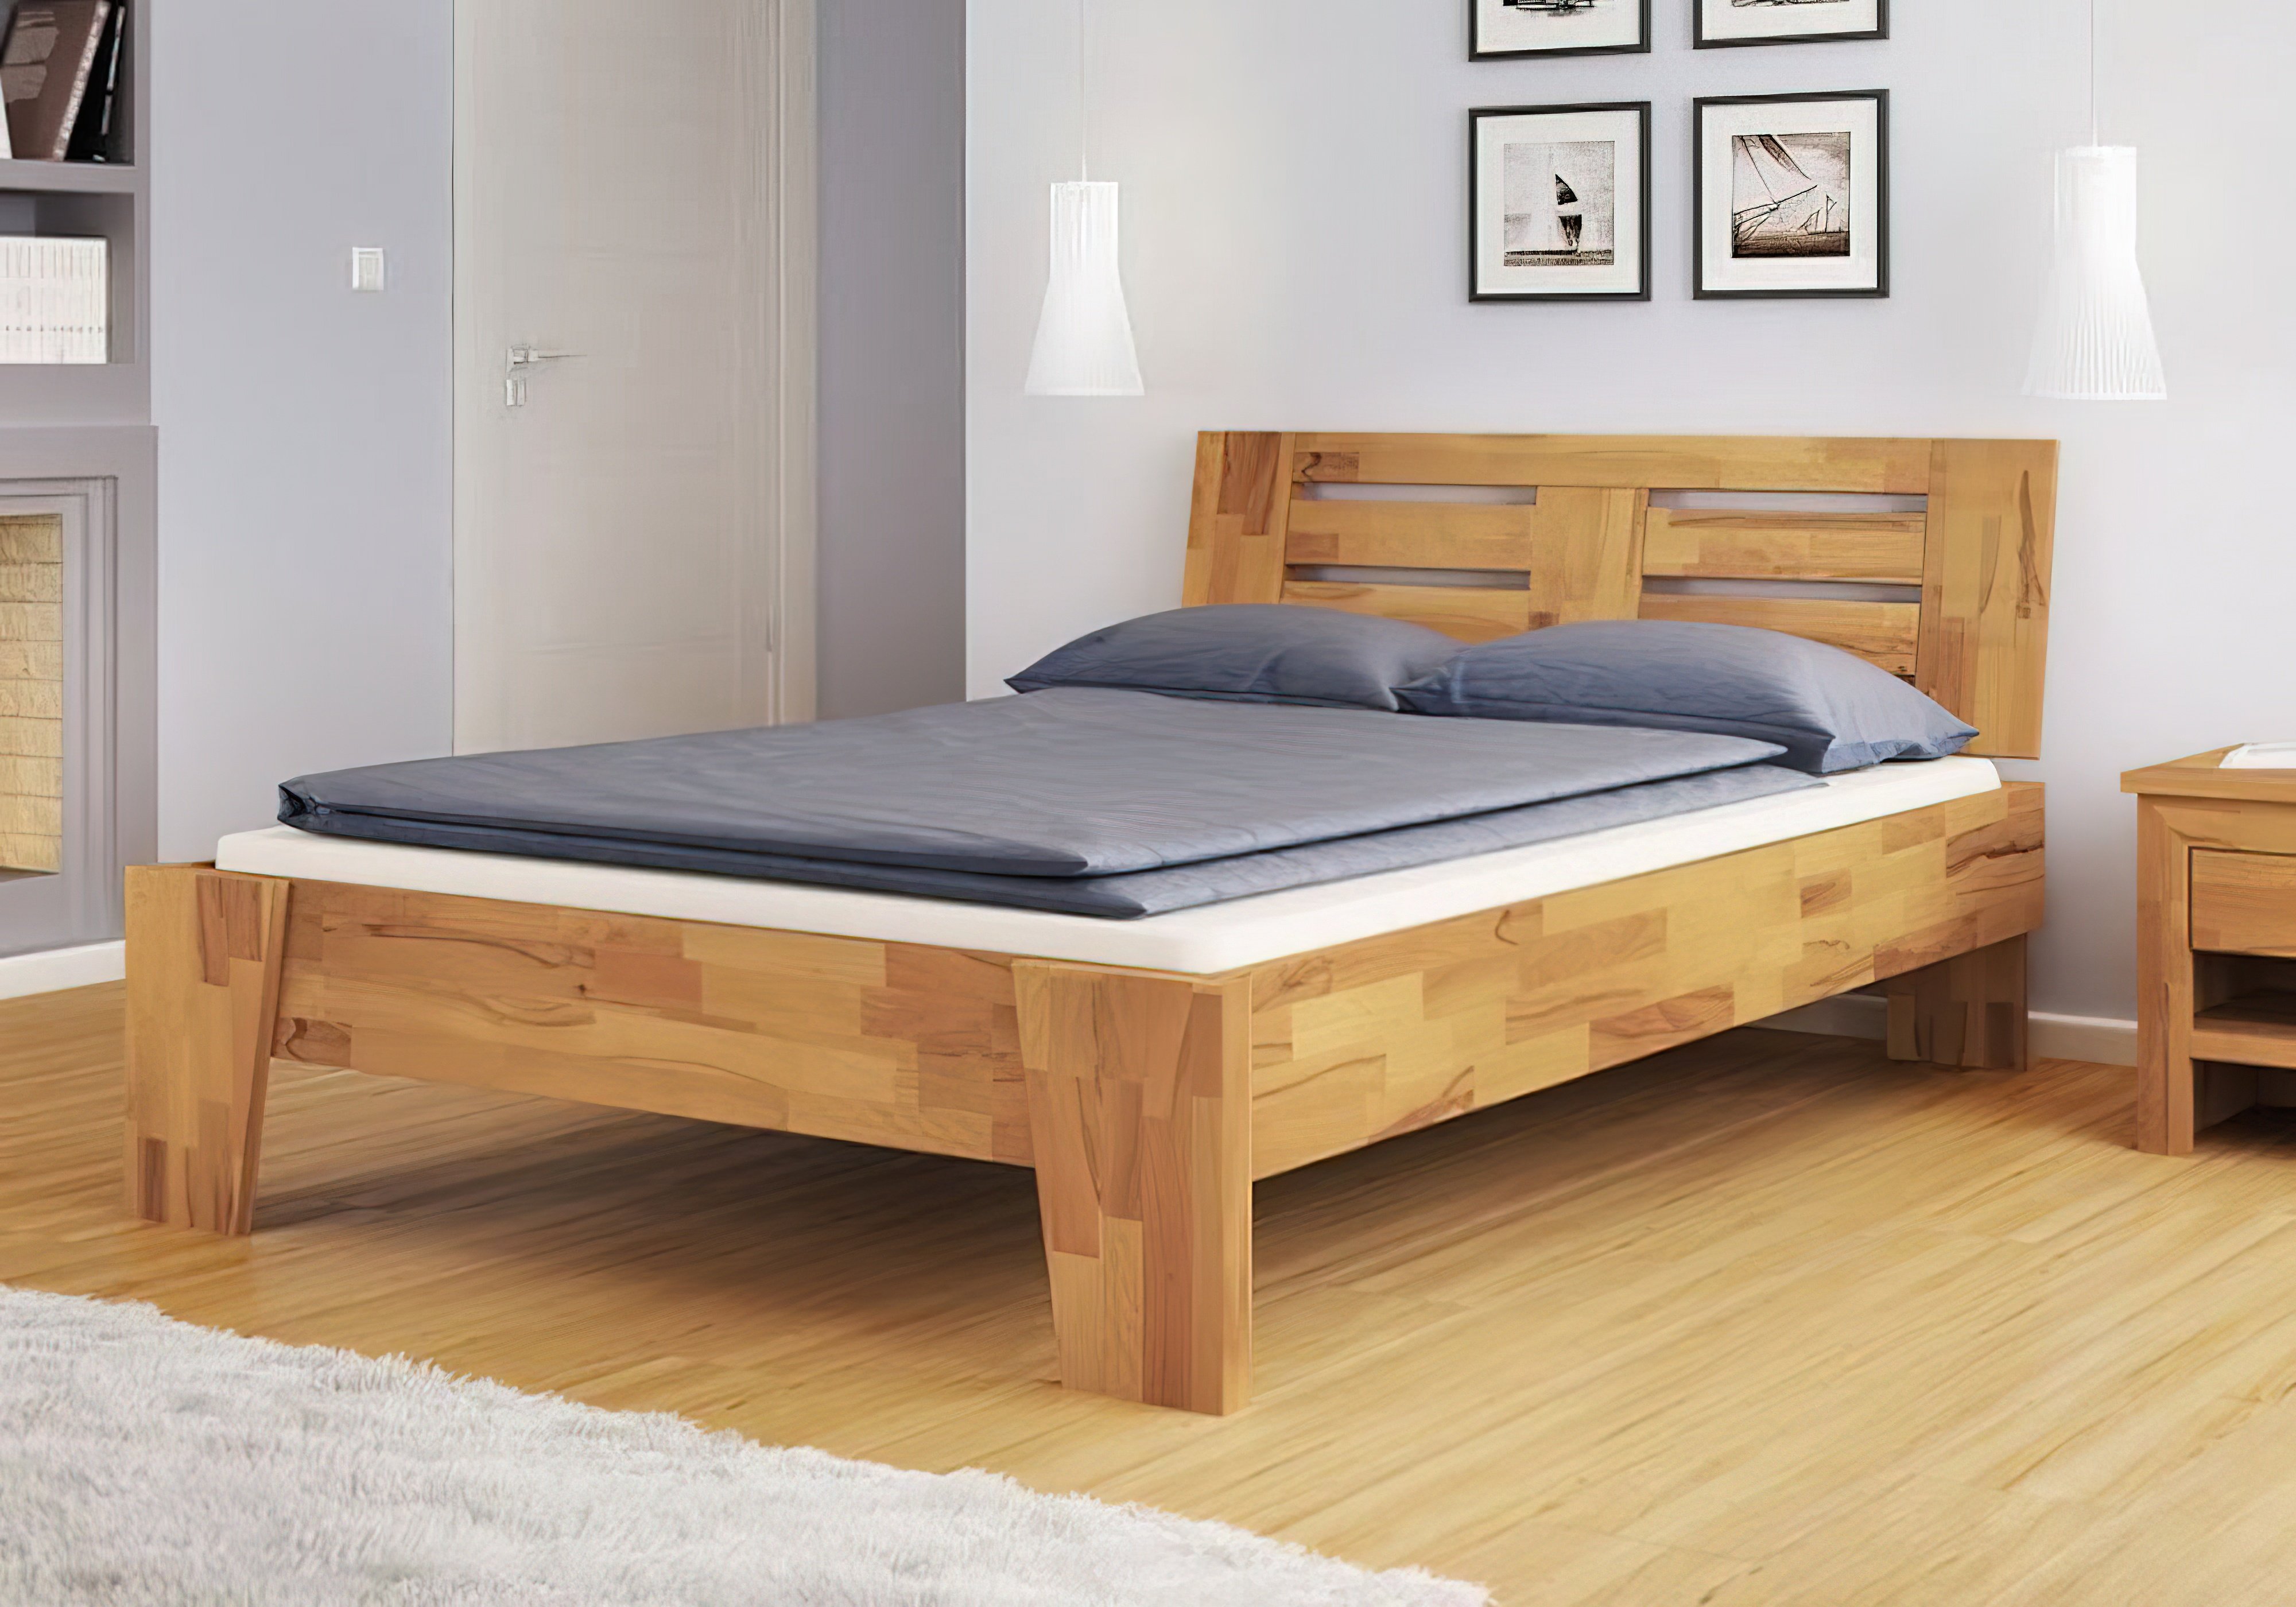  Купить Деревянные кровати Кровать "b112" Mobler